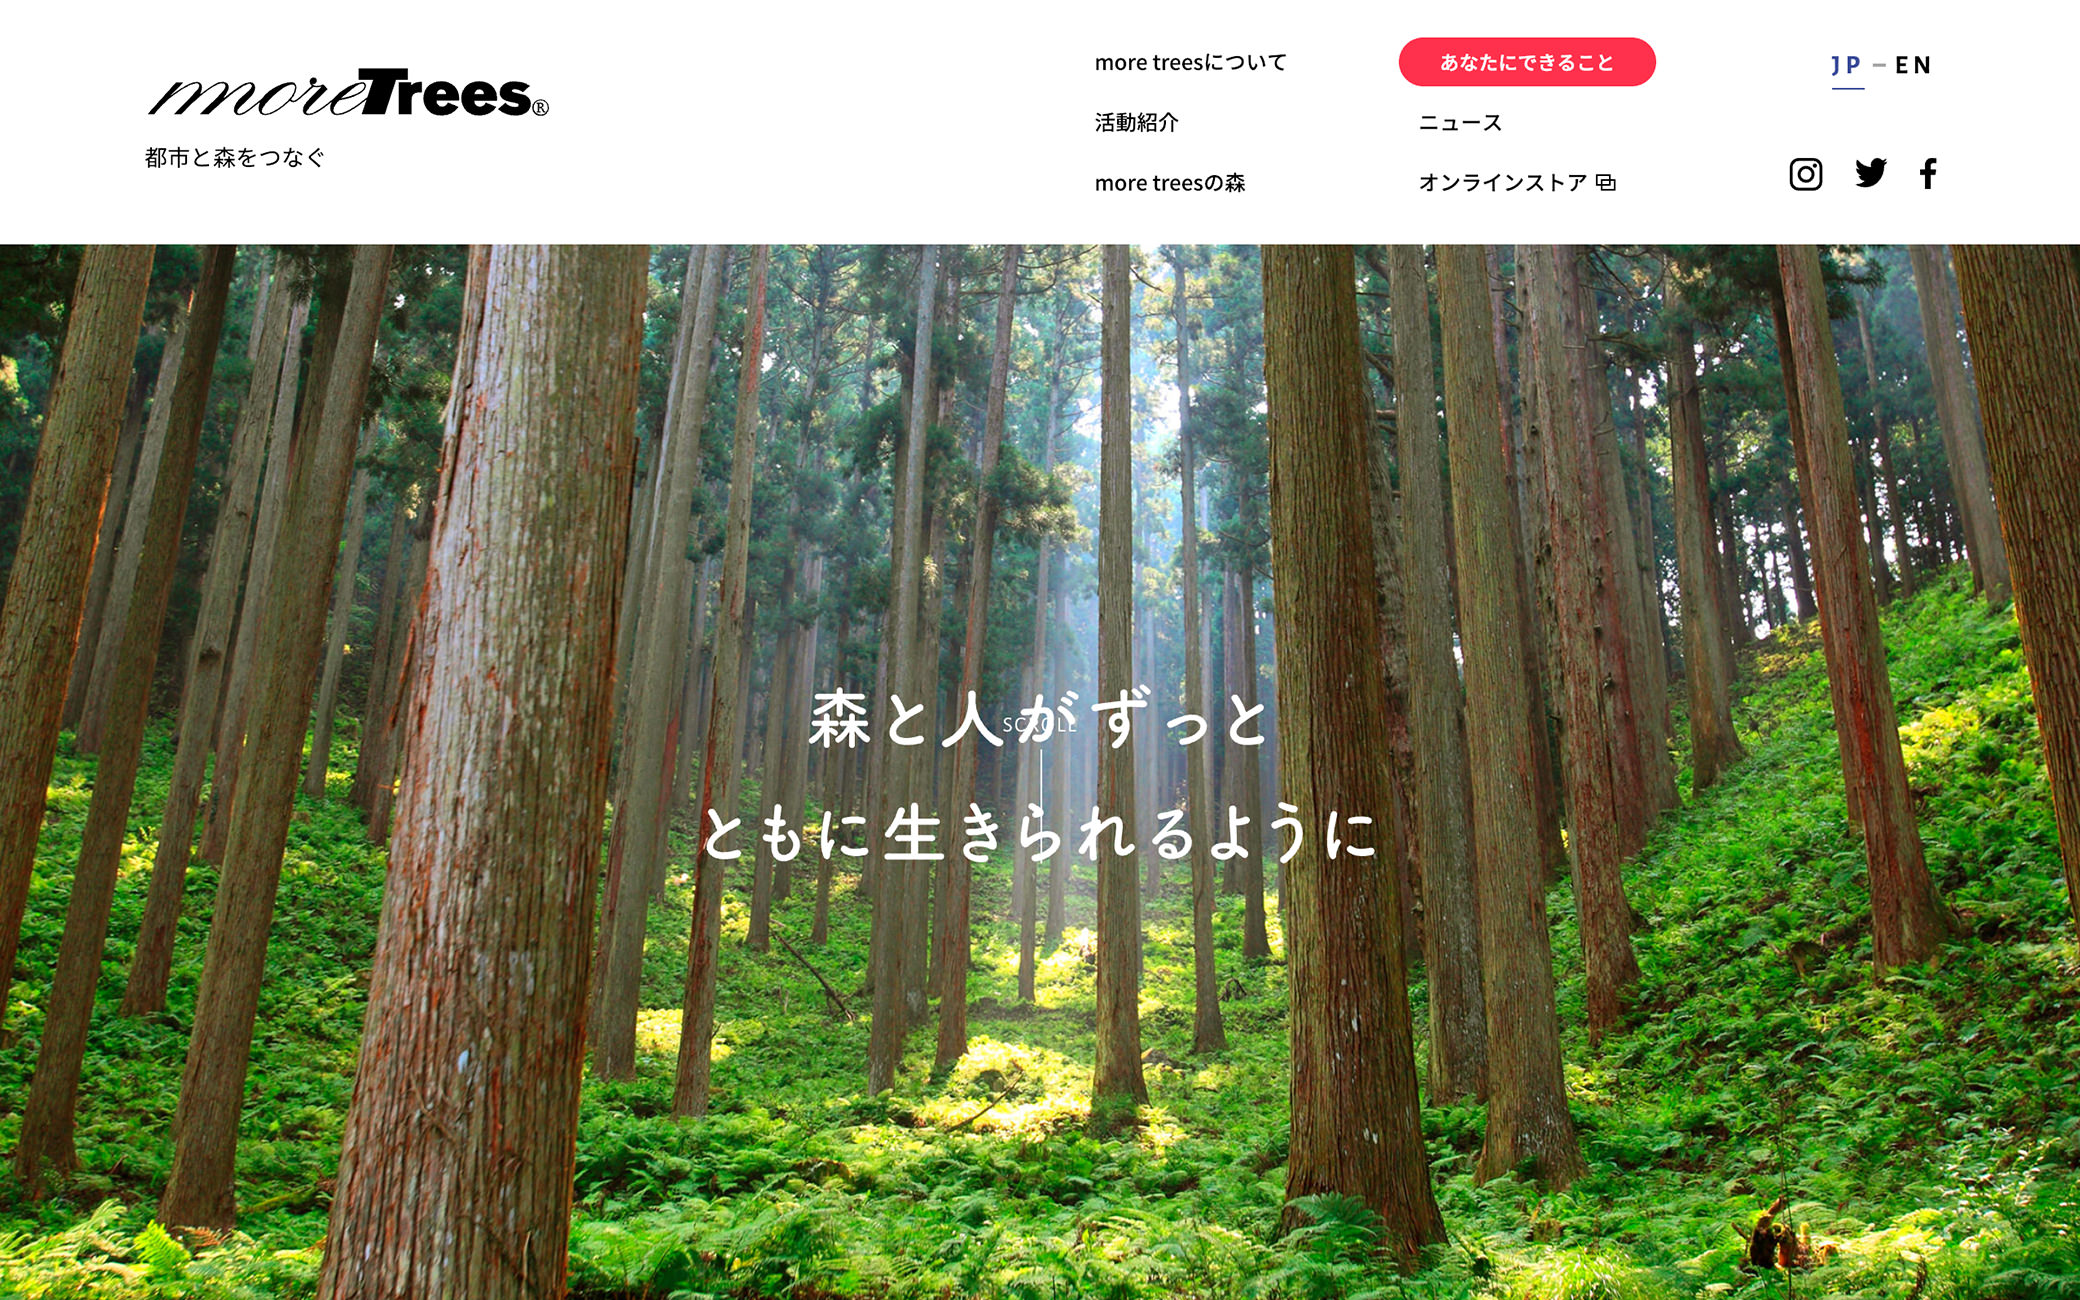 一般社団法人more trees